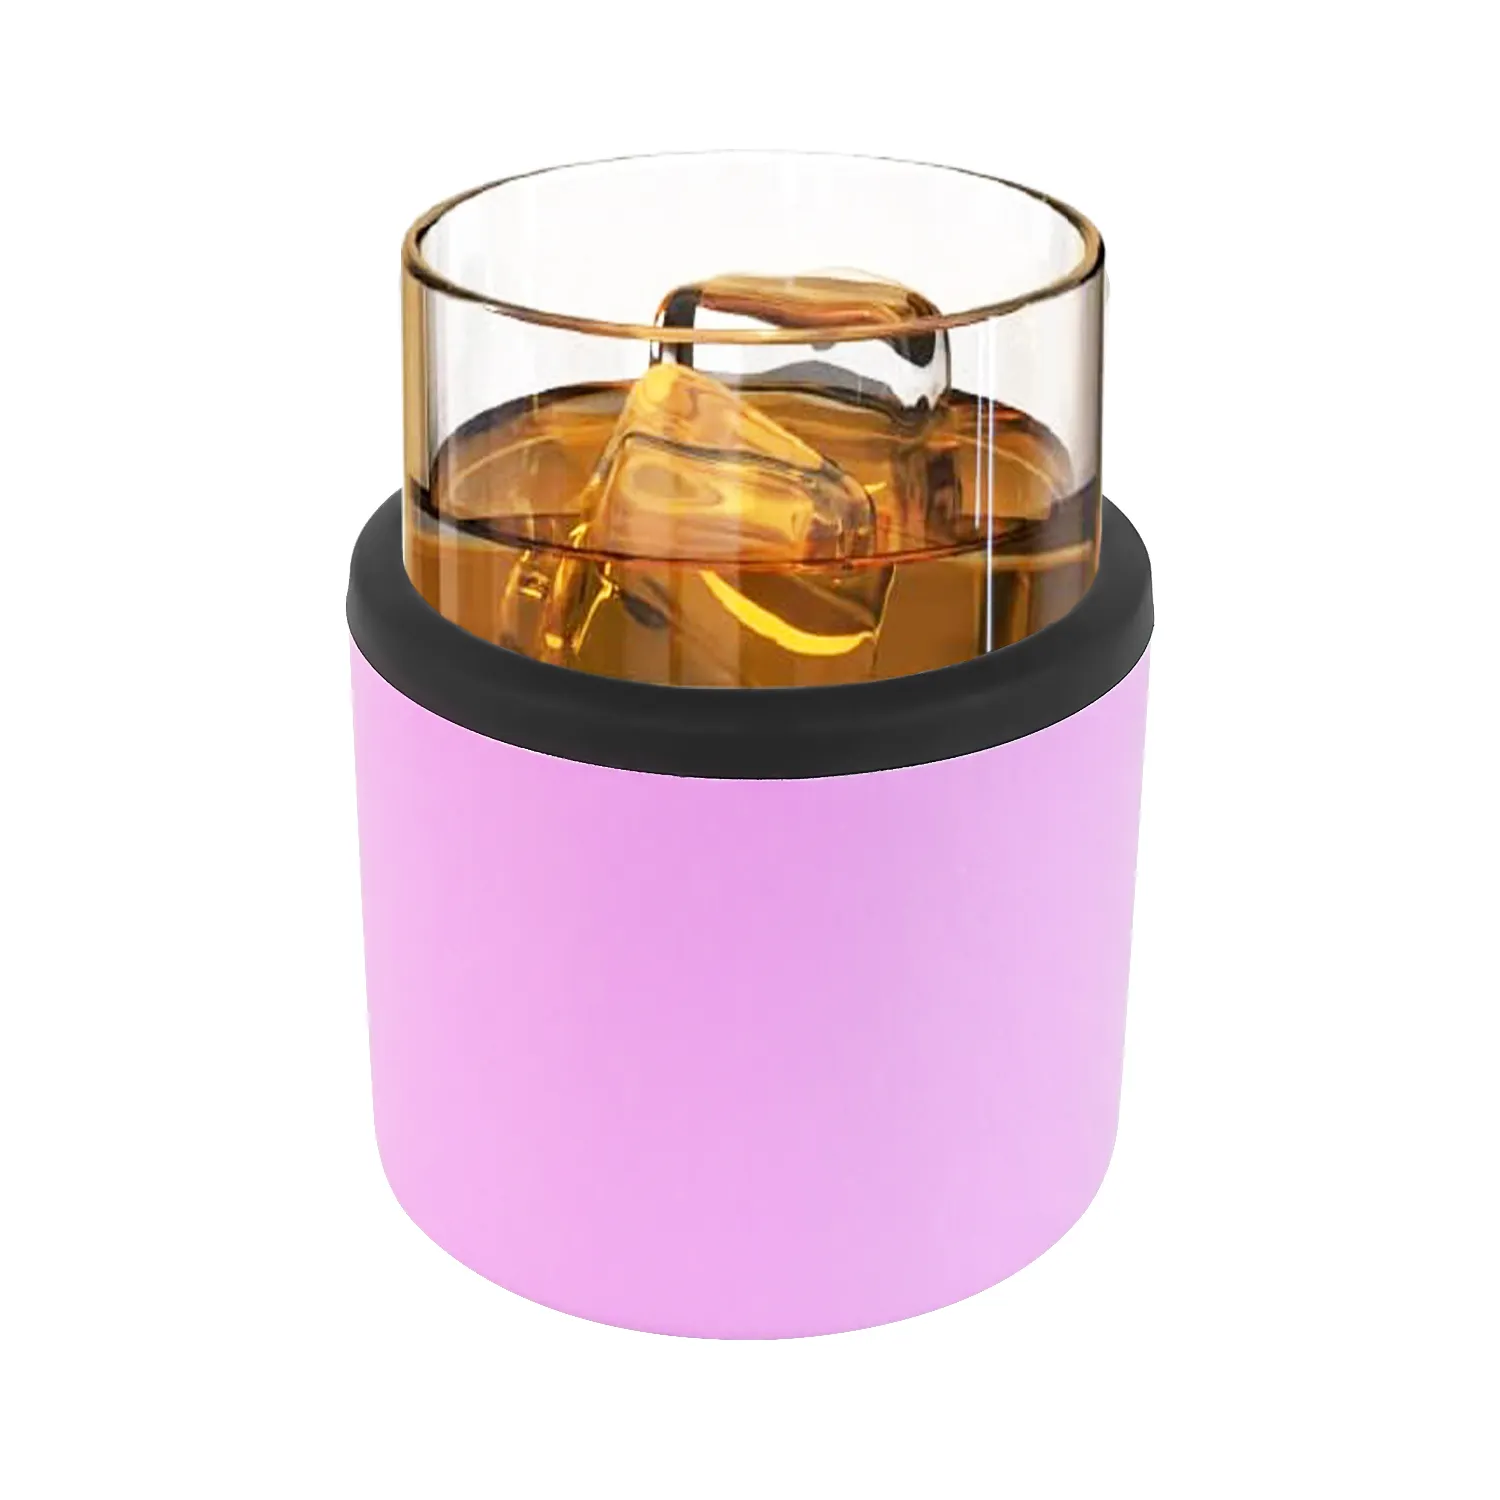 Groothandelsproducten Bourbon Cocktail Whiskyglas 10.5Oz Dubbele Wand Roestvrijstalen Pint Cup Tumbler Met Glazen Inzetstuk